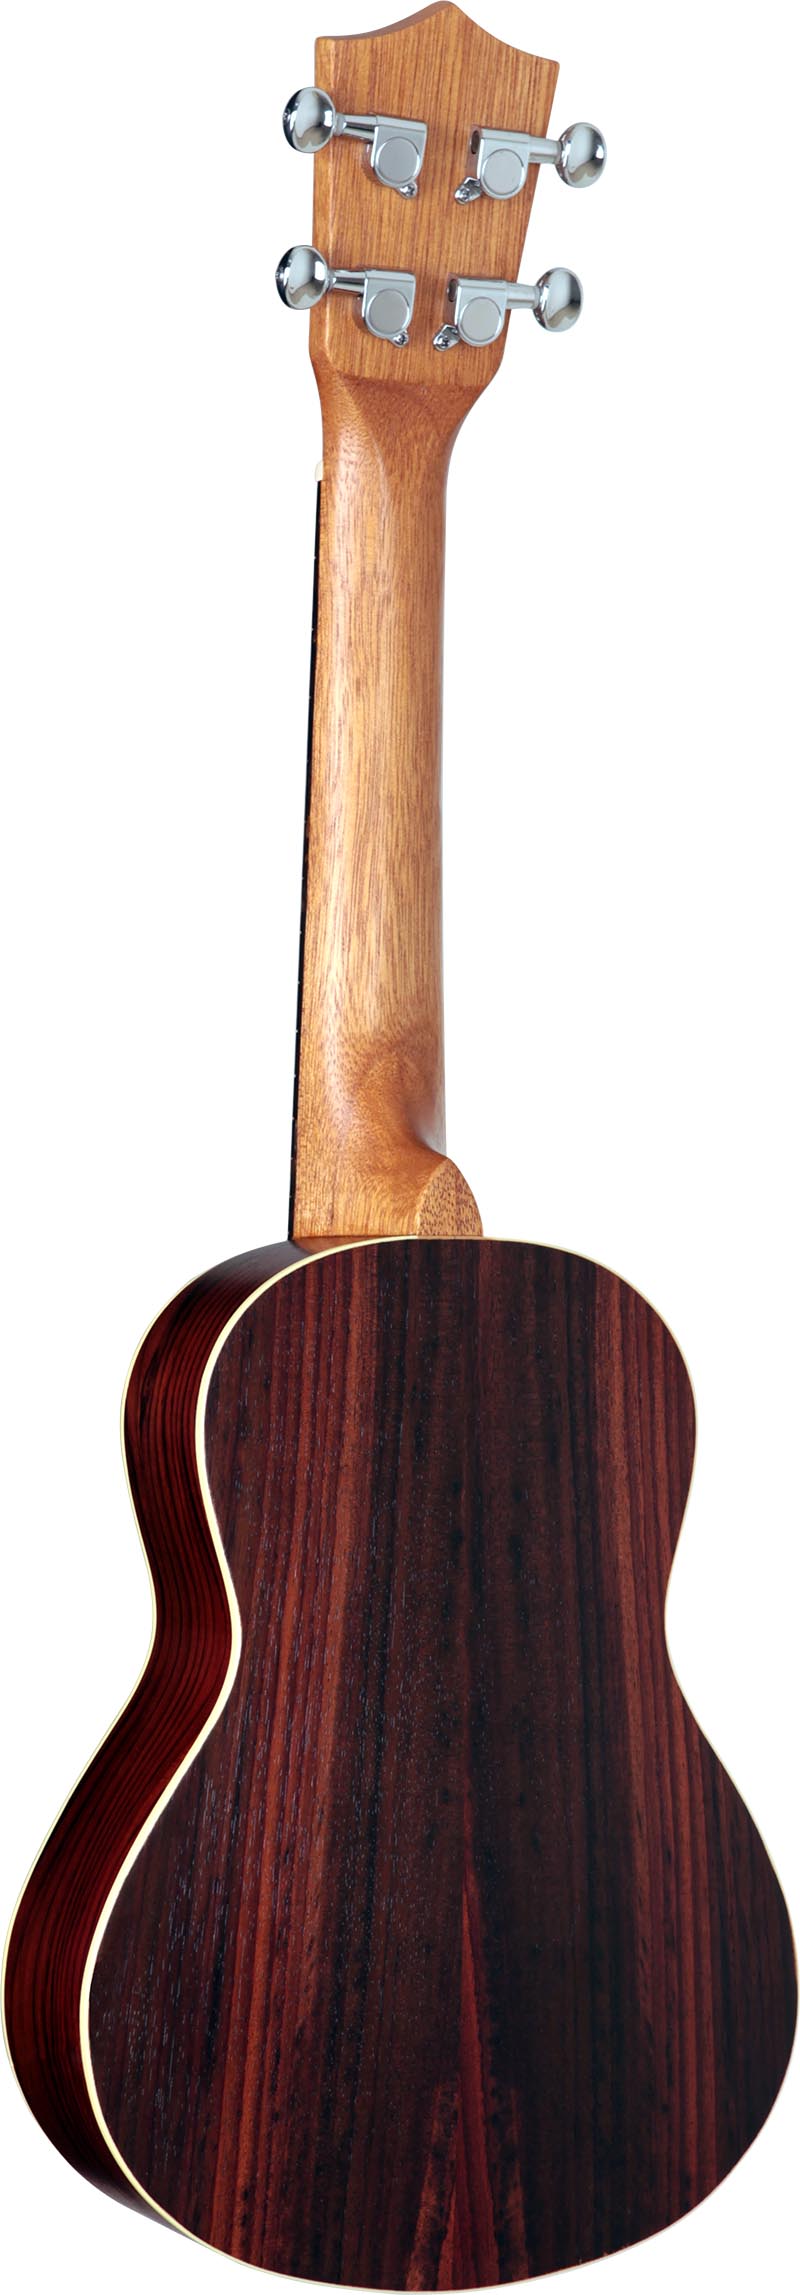 su23r ukulele concerto shelby su23r stnt jacaranda acetinado visao posterior vertical